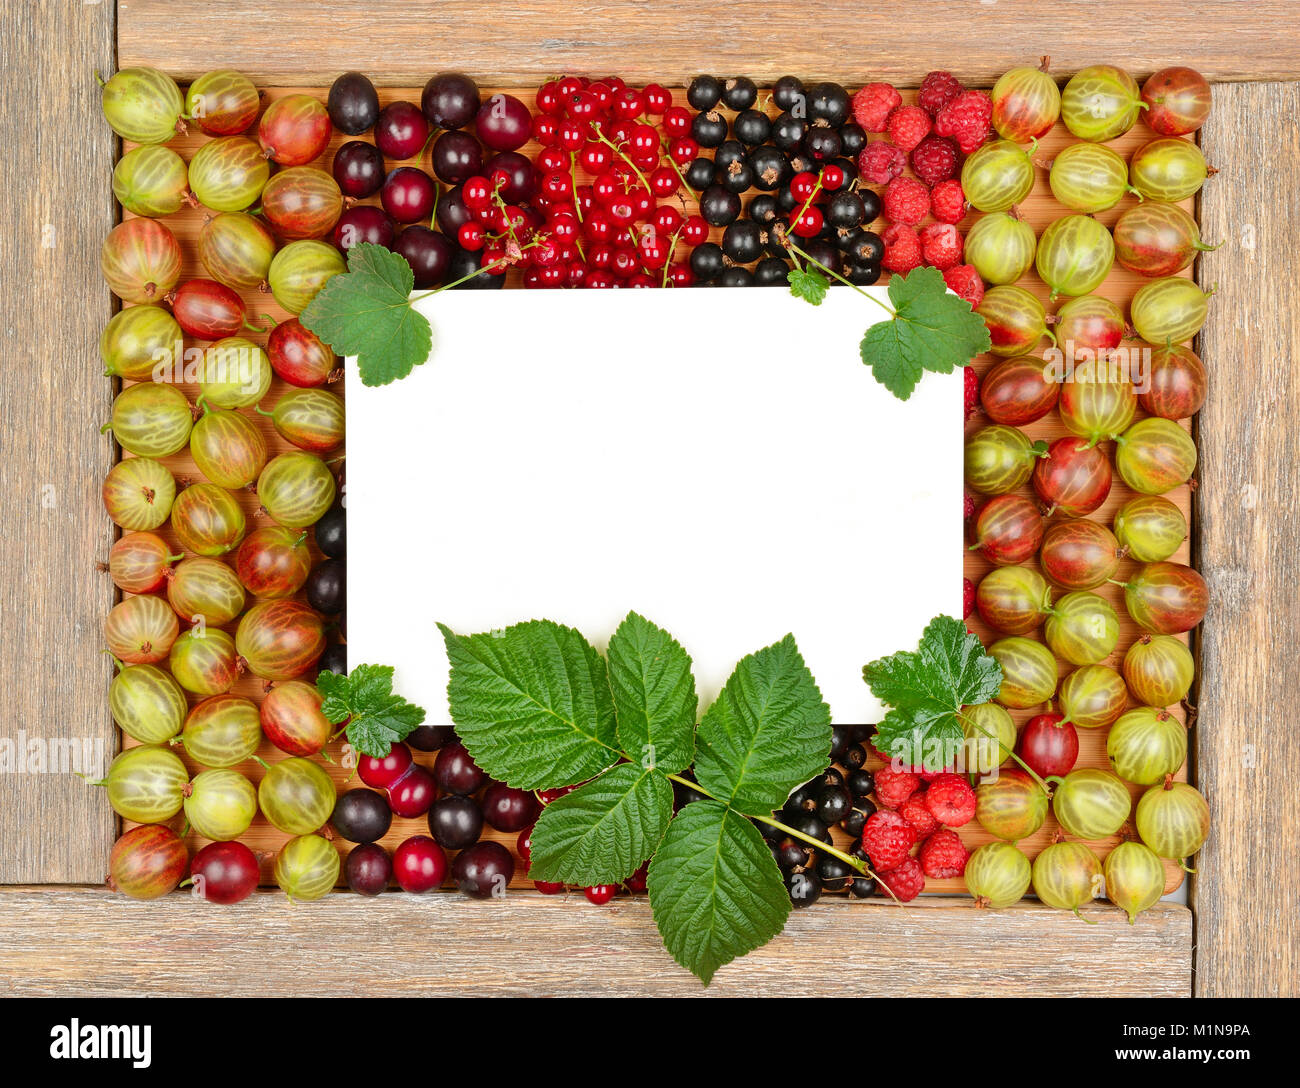 Scheda ricetta sullo sfondo dei frutti di bosco freschi (lamponi, uva spina, ribes, prugna). Vista dall'alto. Foto Stock